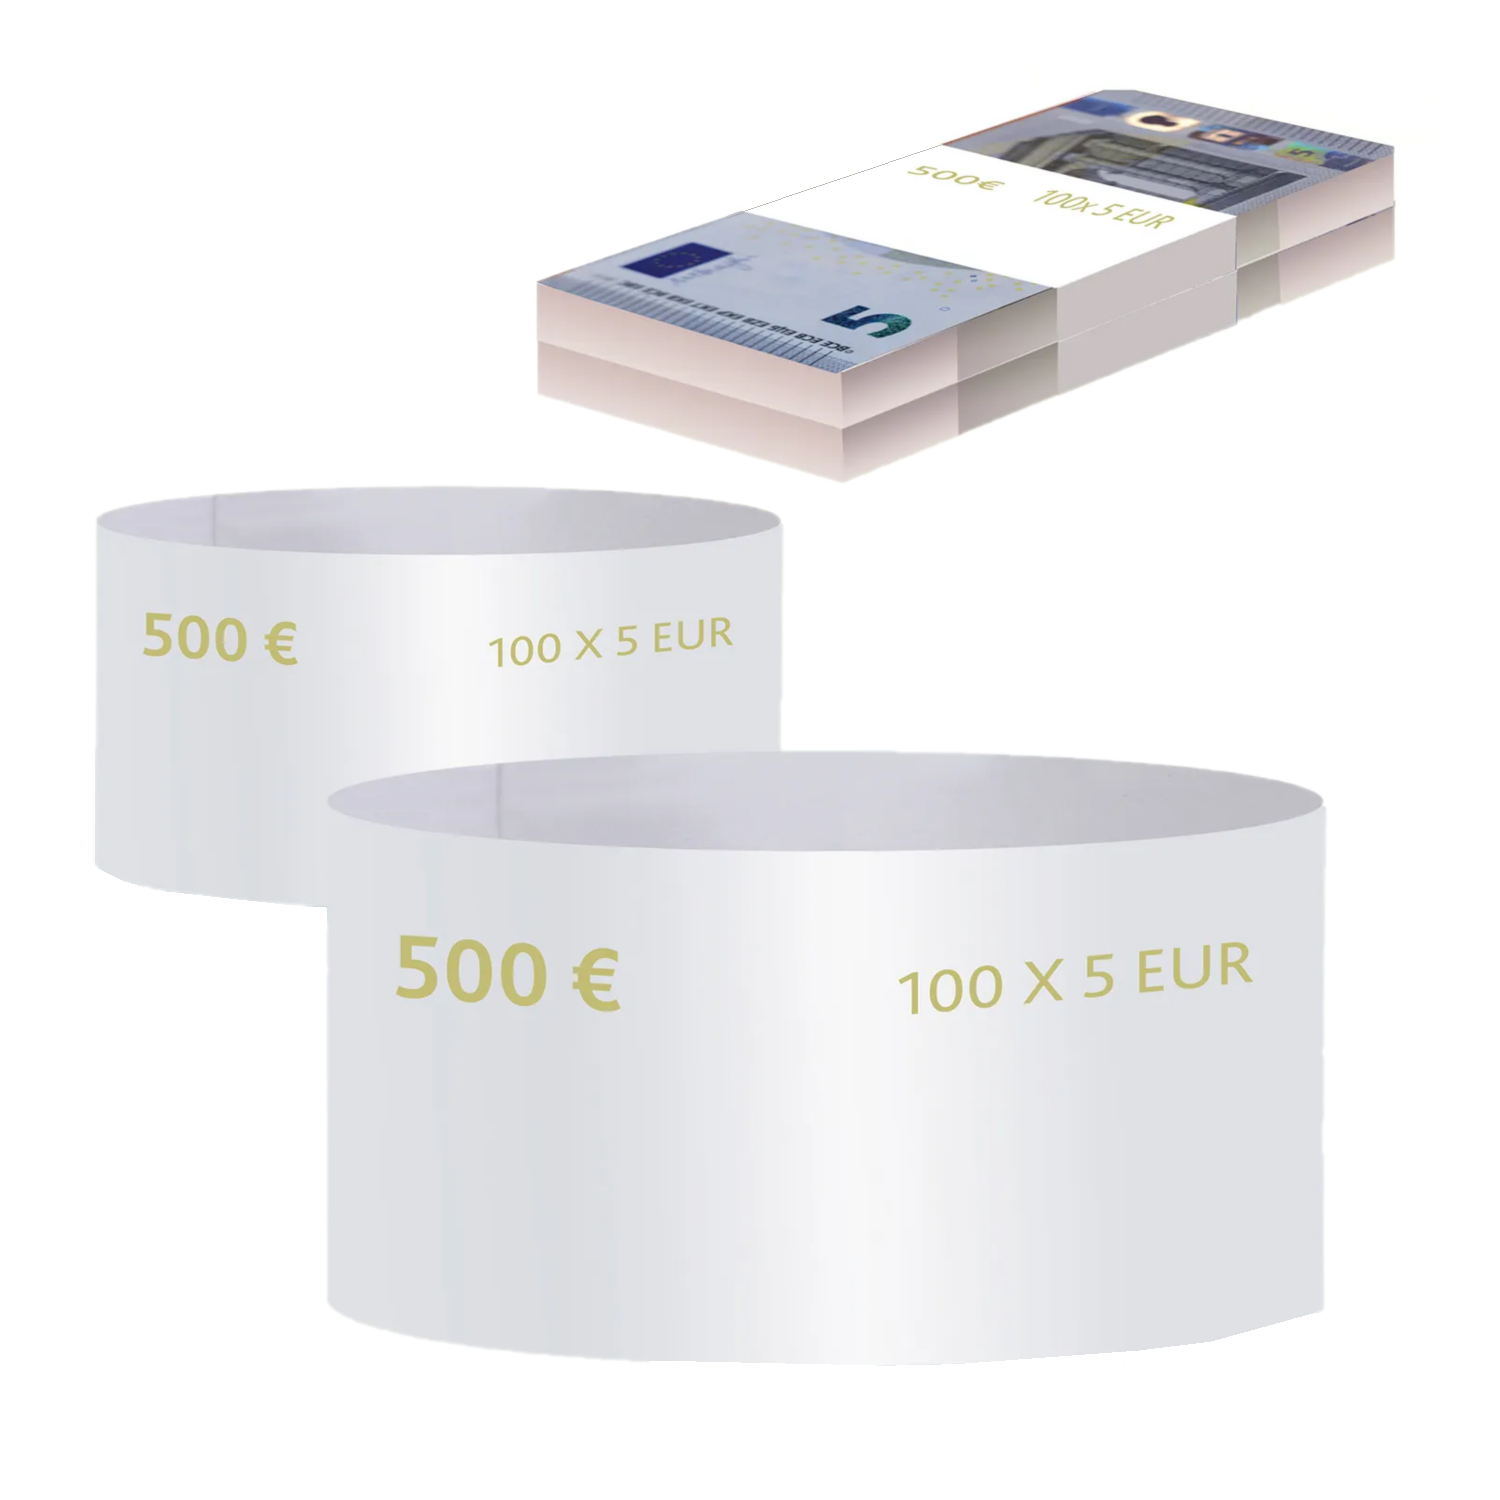 Бандероли кольцевые, комплект 500 шт., номинал 5 евро